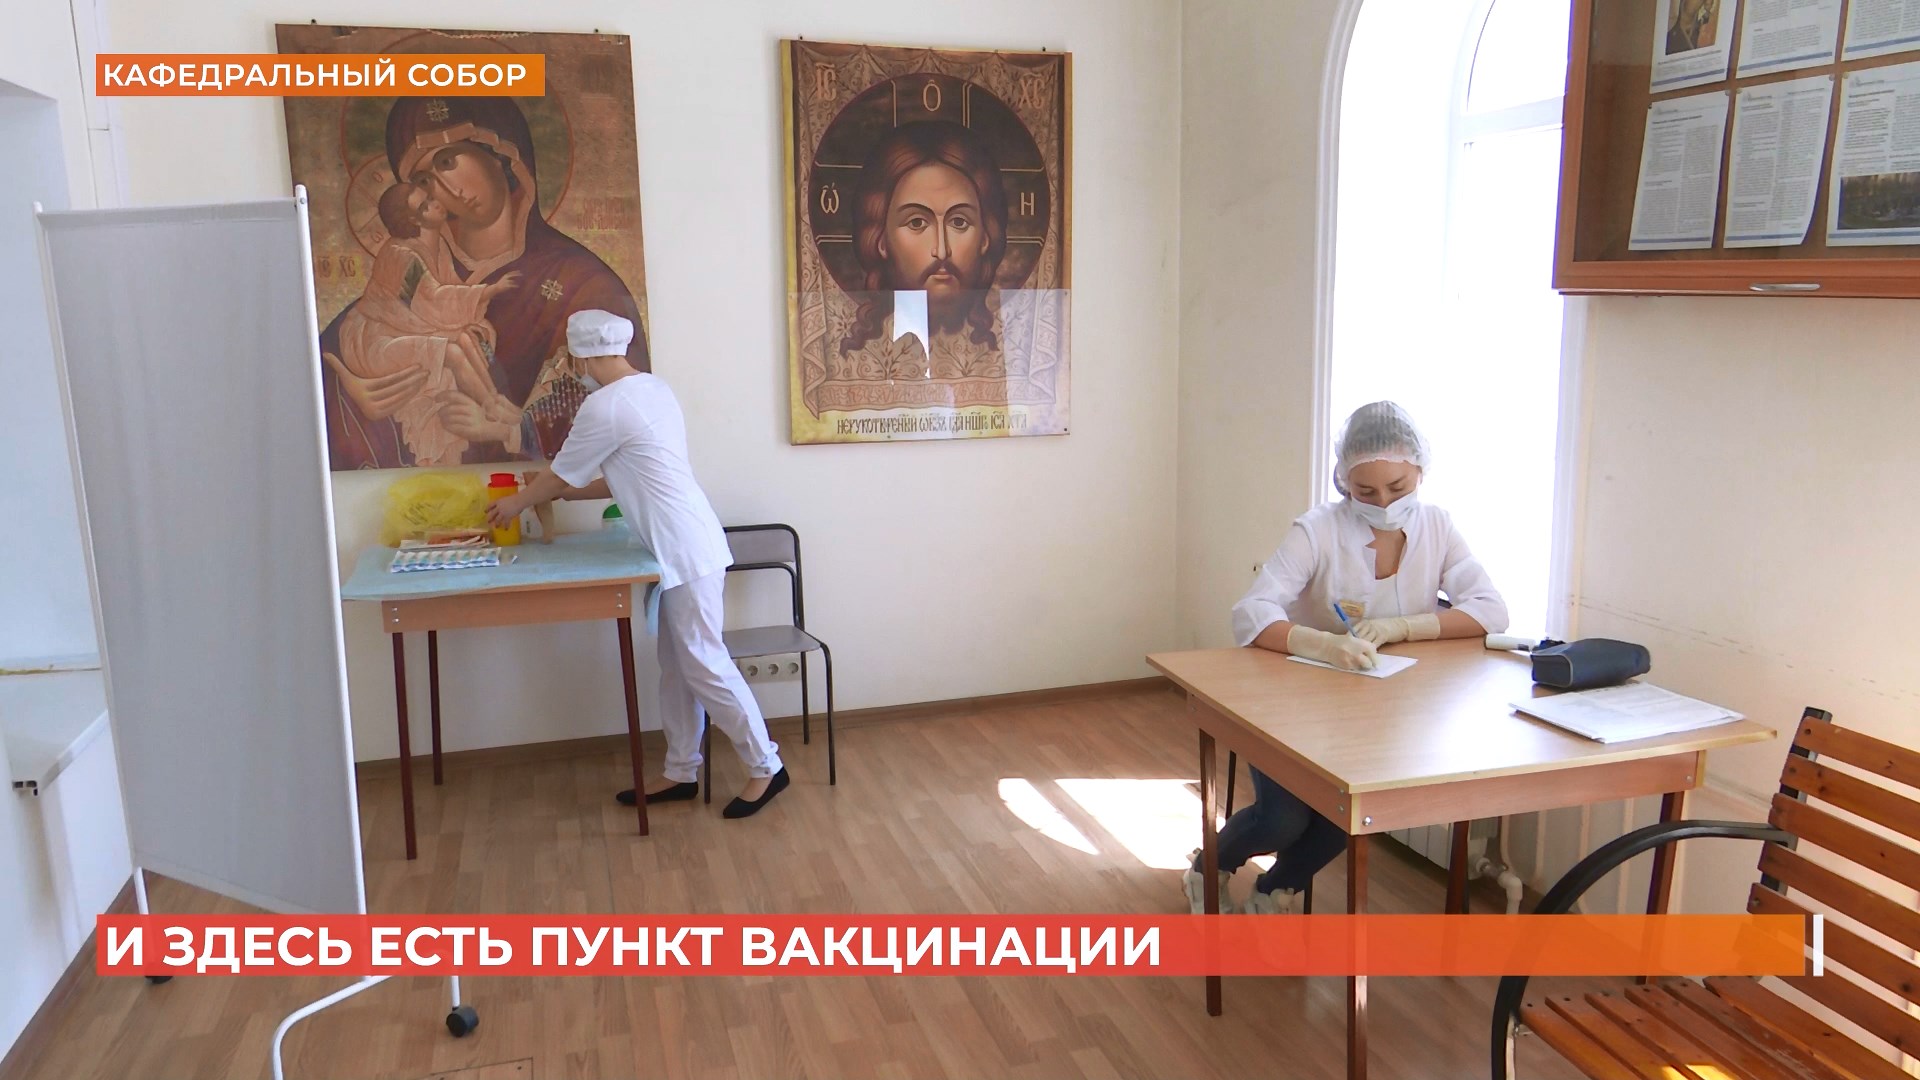 Пункт вакцинации открыли в ростовском Кафедральном соборе